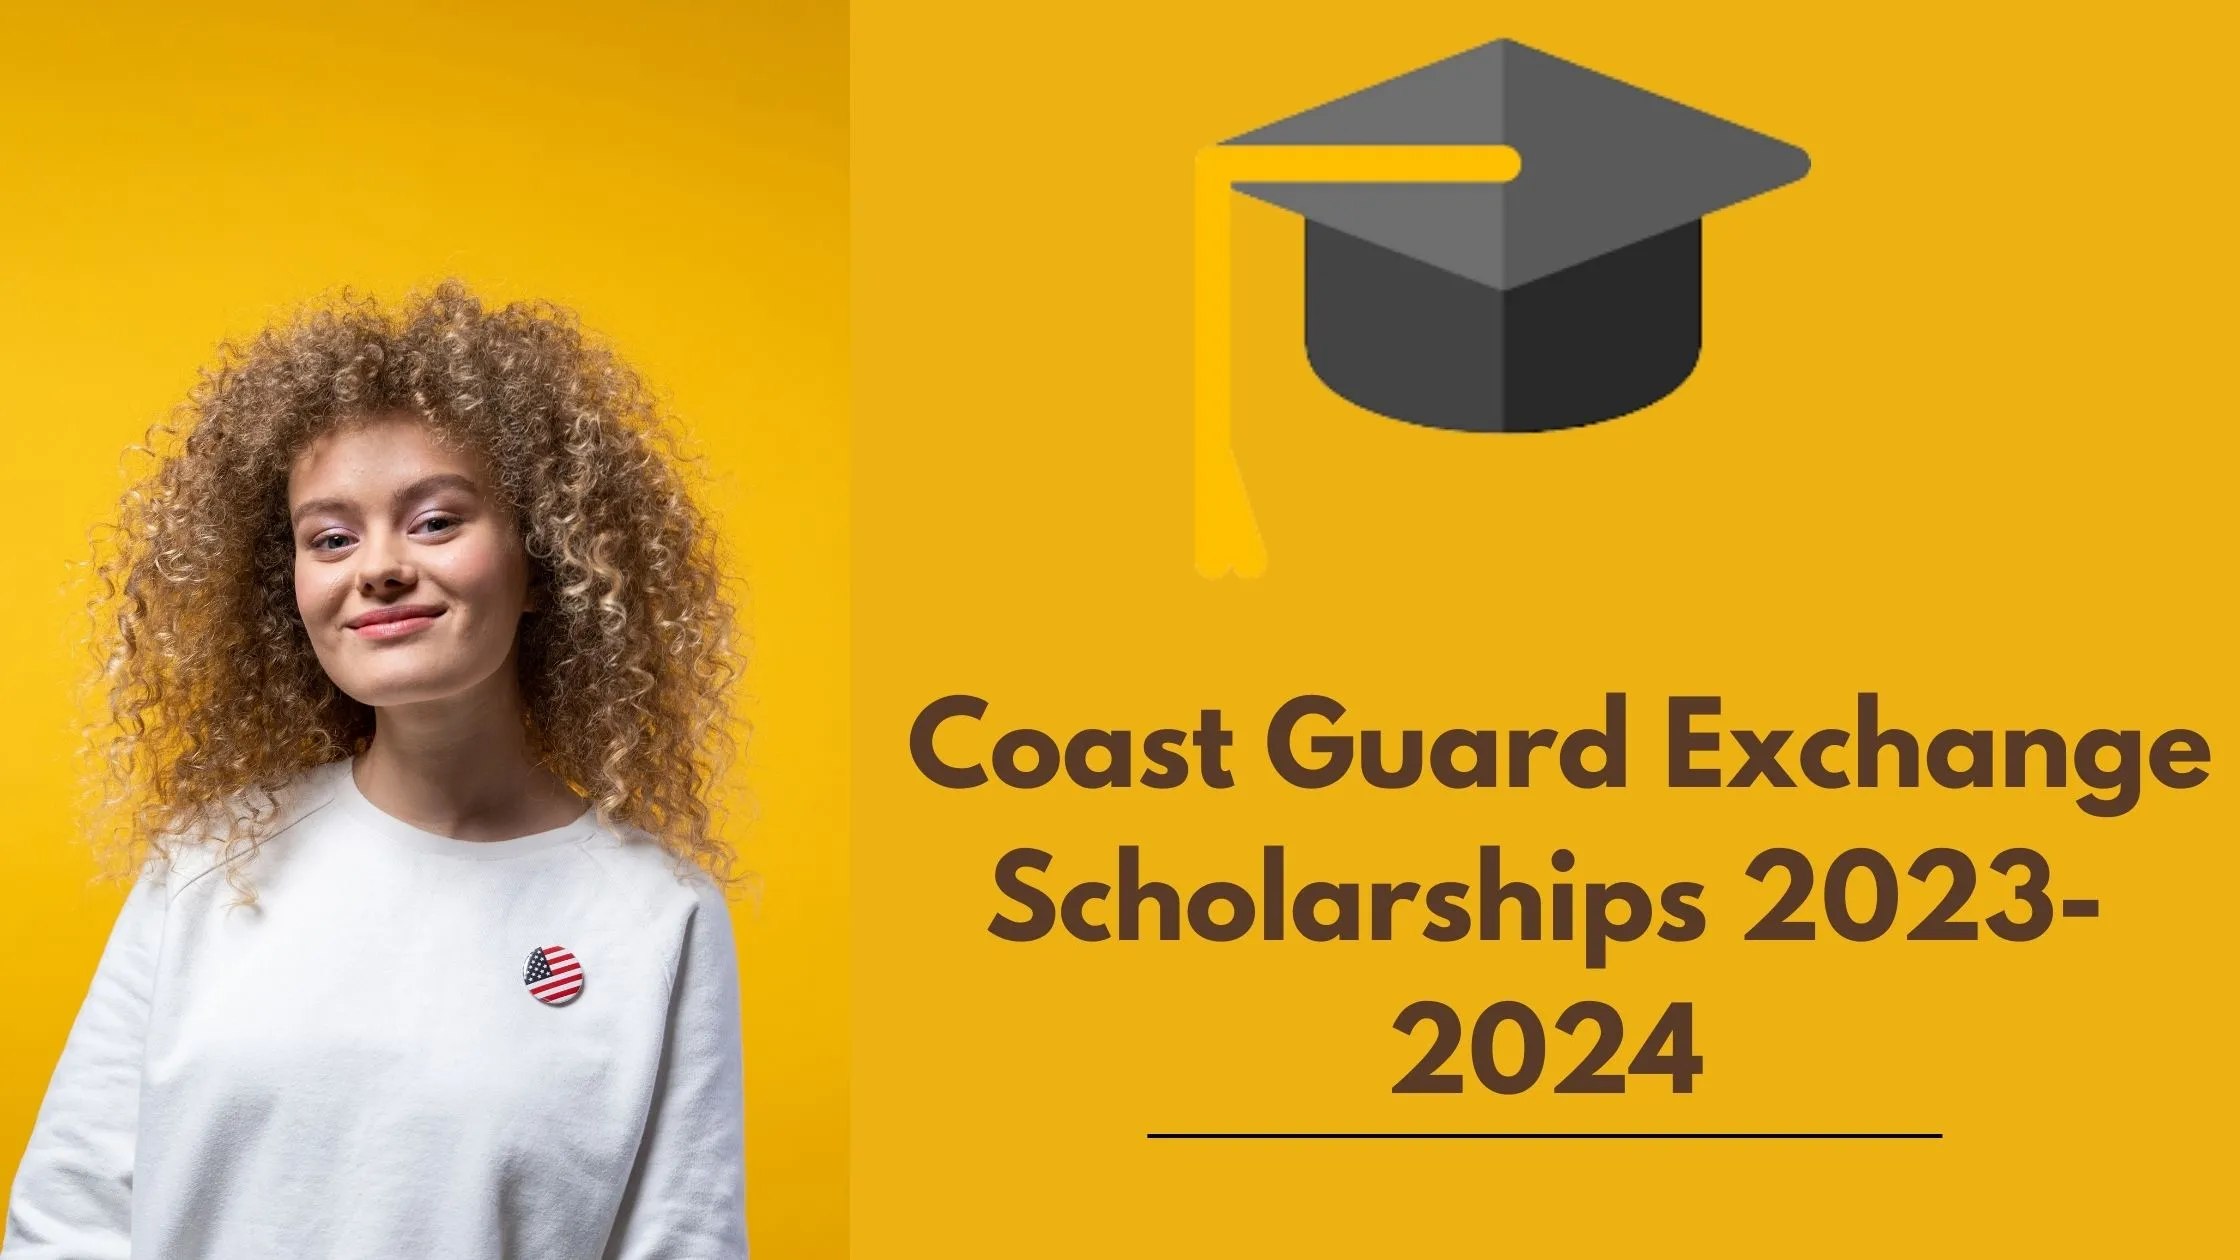 Coast Guard Exchange Scholarships 2023-2024